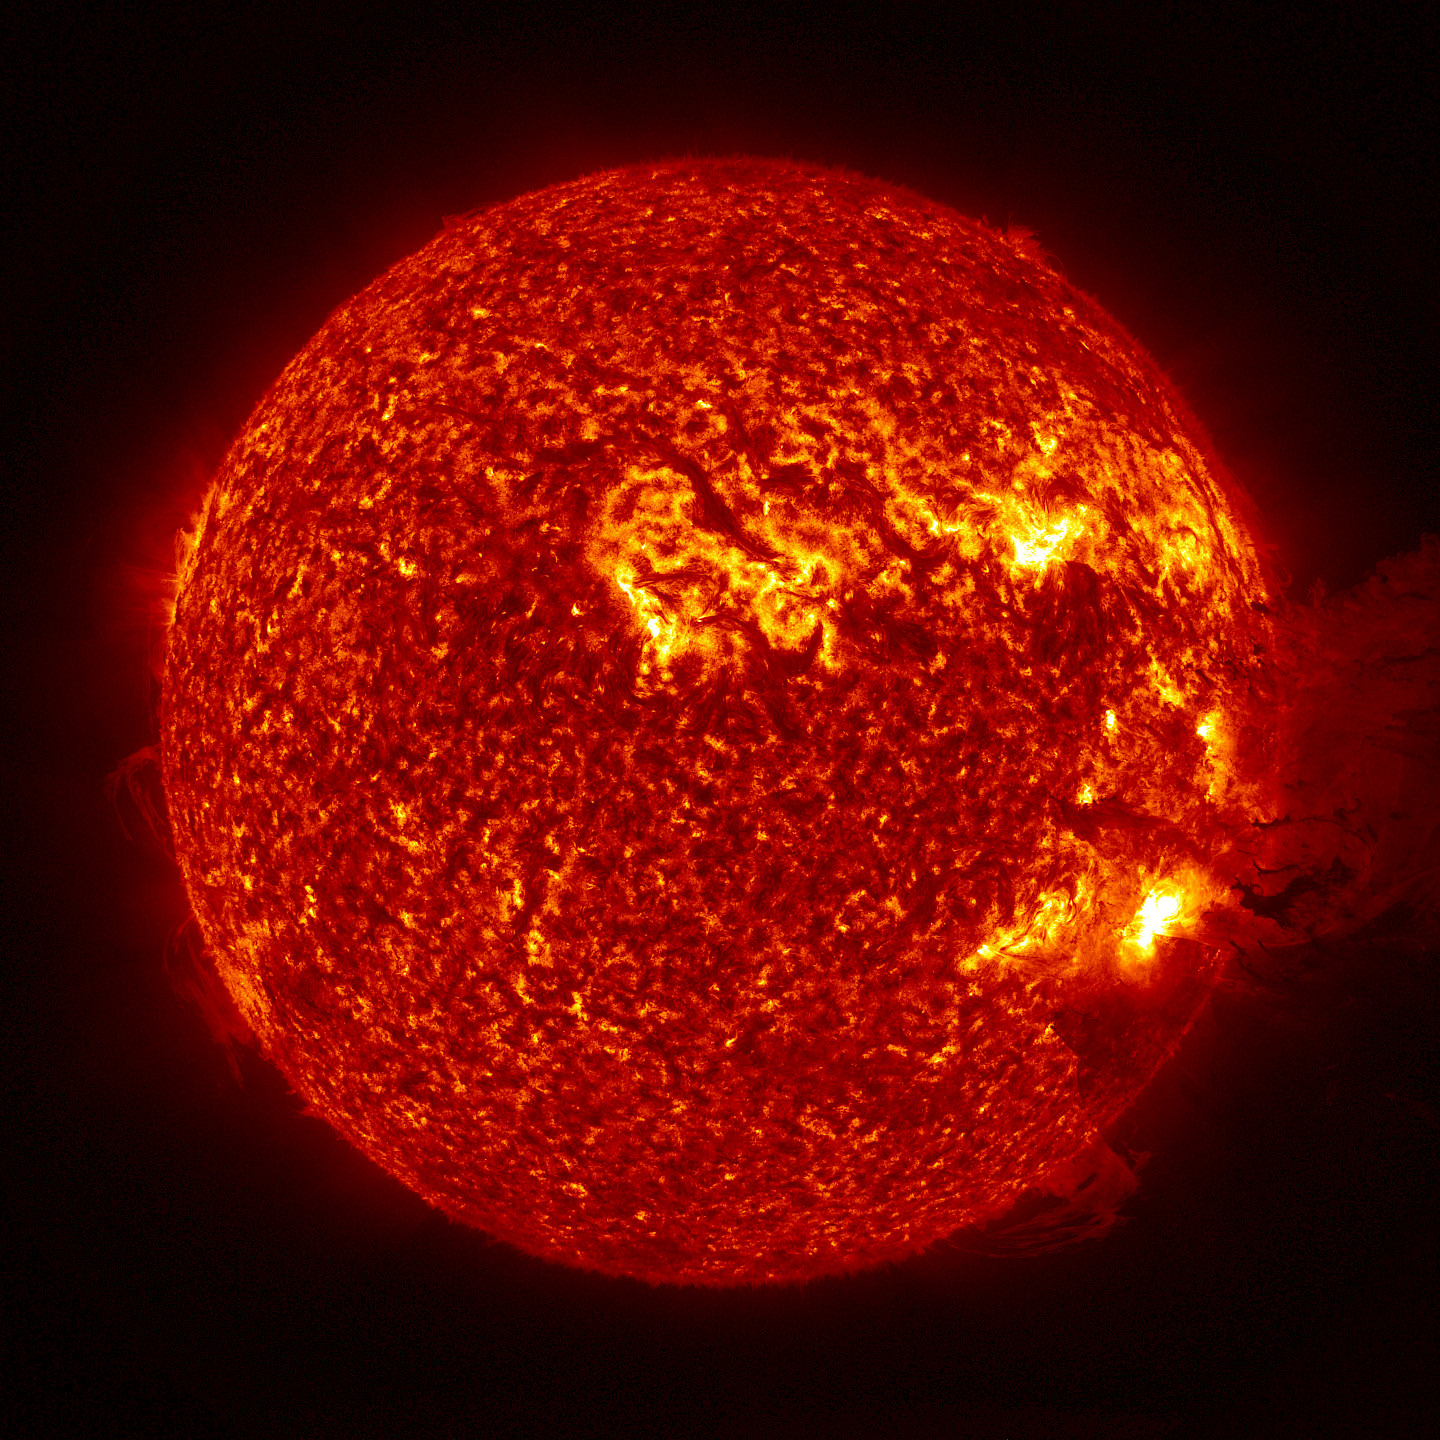 Bild: NASA, Solar Dynamics Observatory, 2013